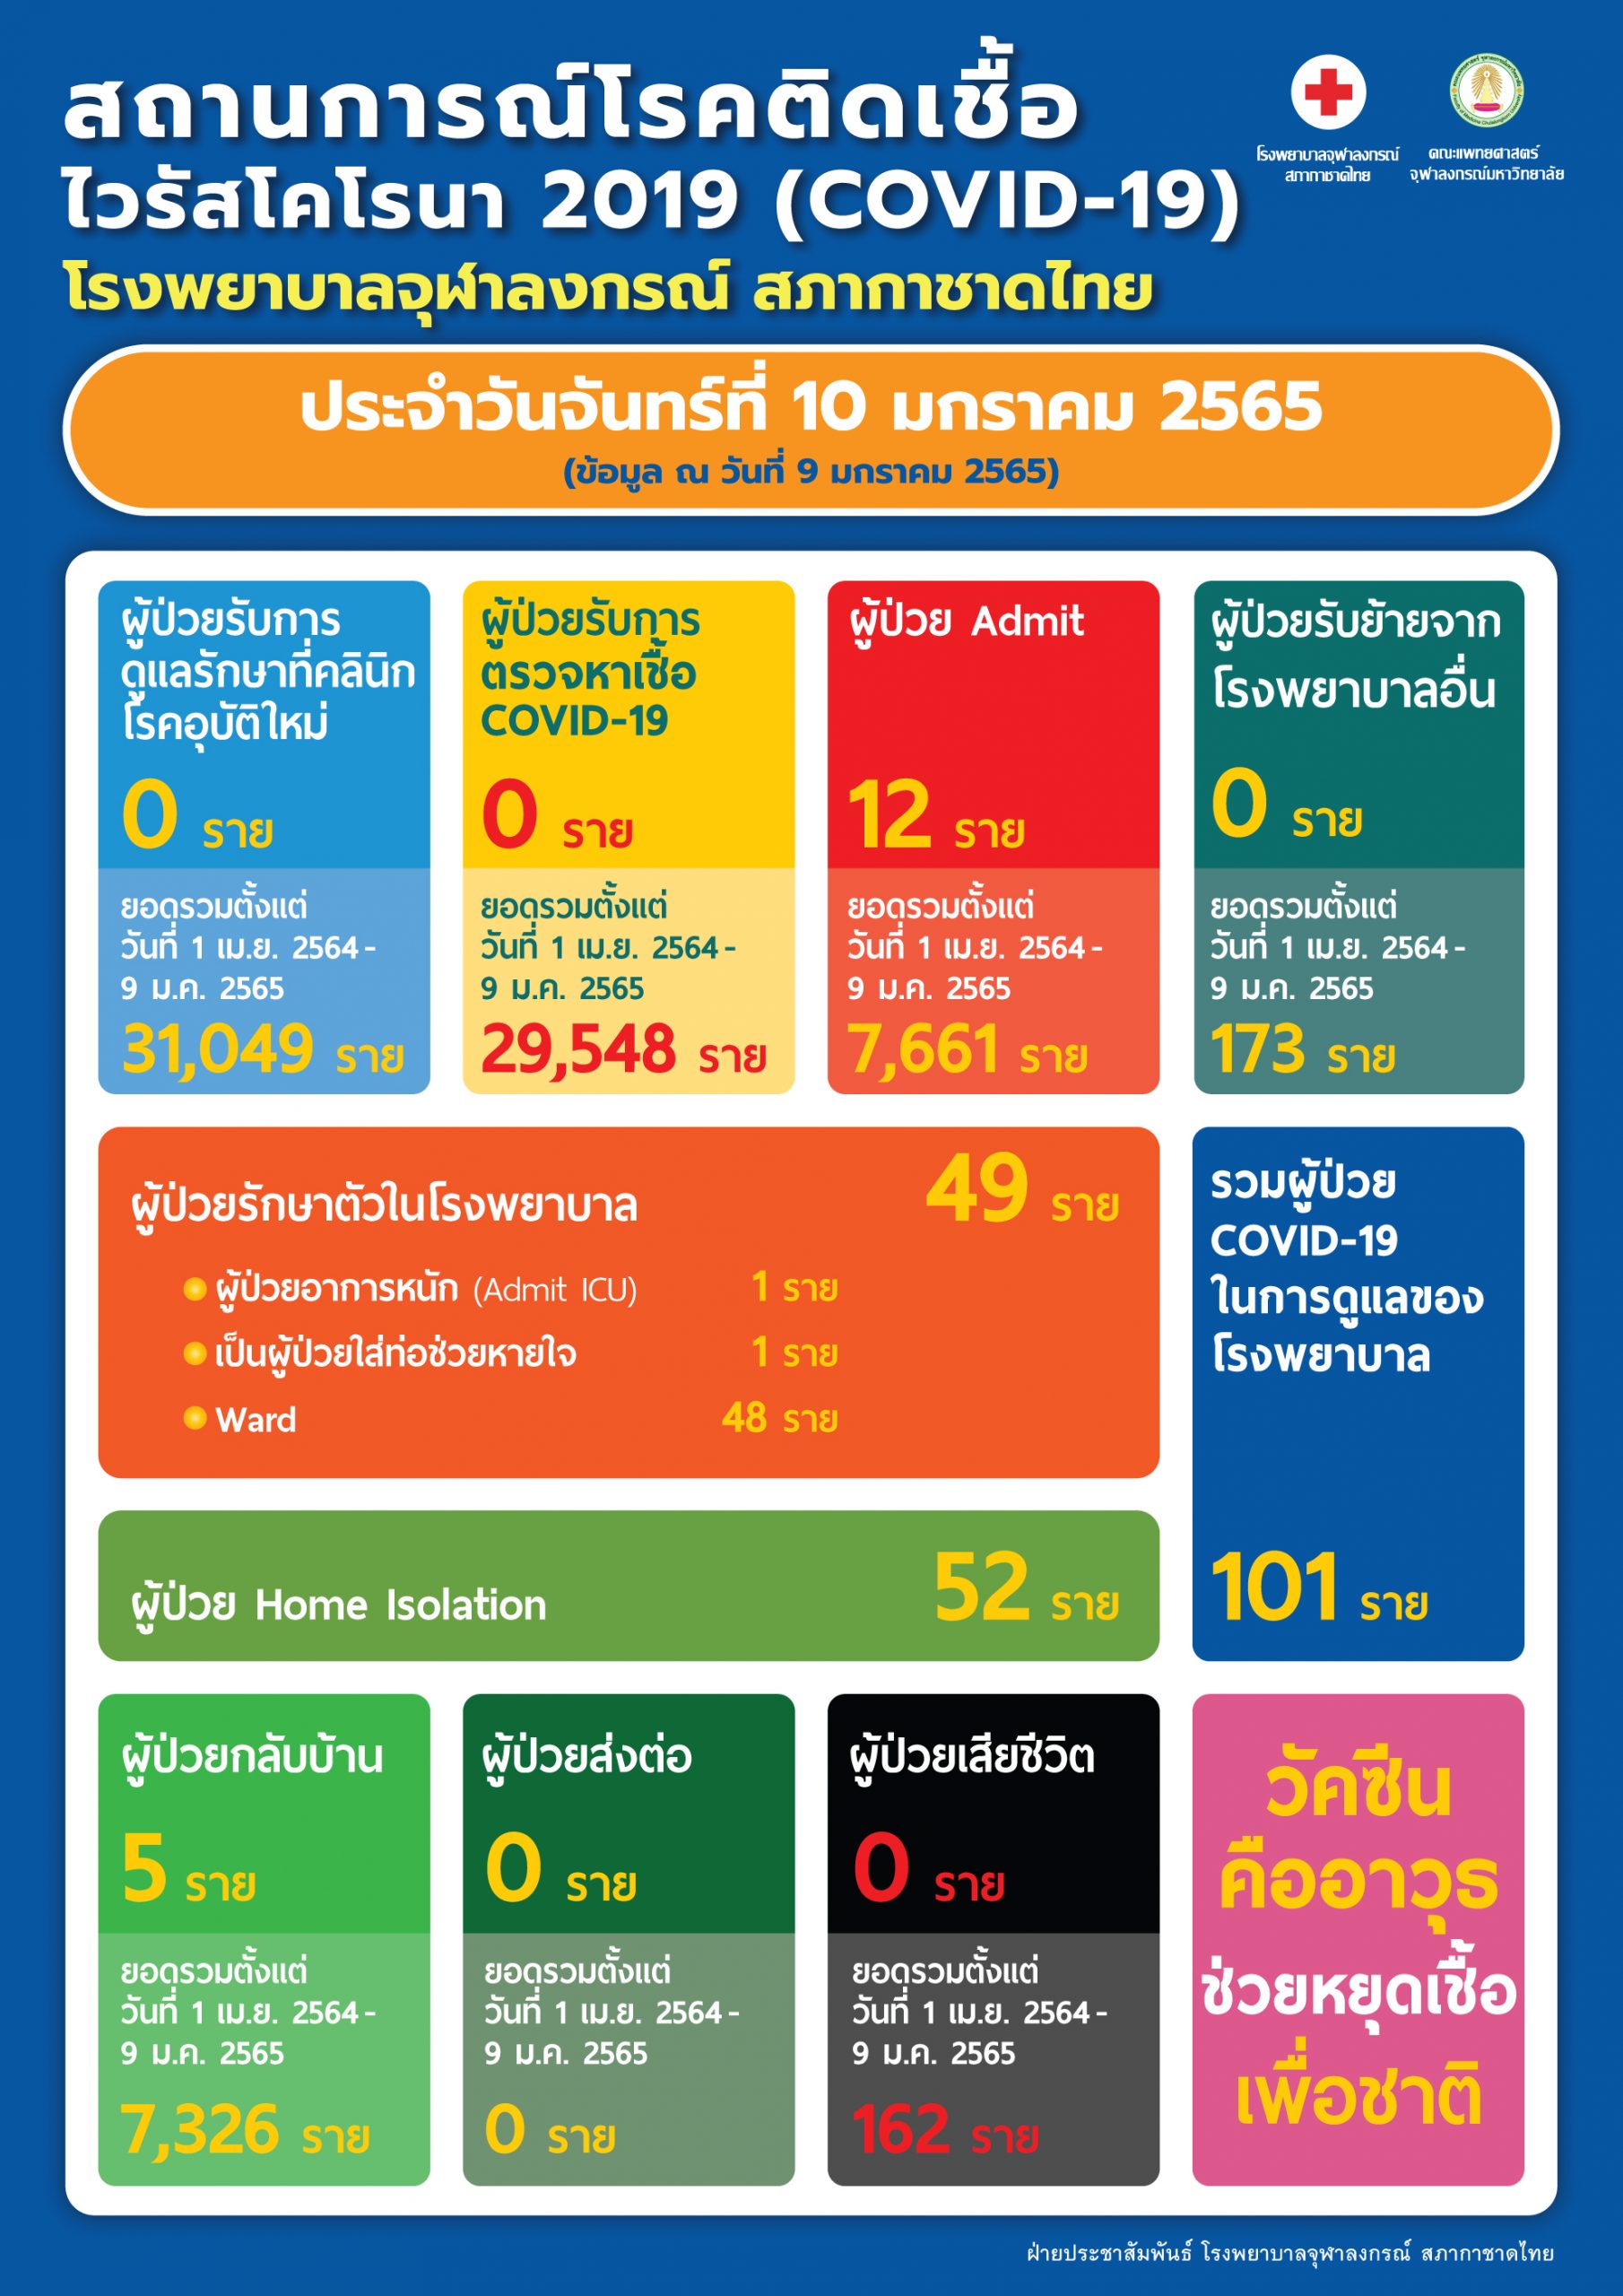 สถานการณ์โรคติดเชื้อไวรัสโคโรนา 2019 (COVID-19) โรงพยาบาลจุฬาลงกรณ์ สภากาชาดไทย ประจำวันจันทร์ที่ 10 มกราคม 2565